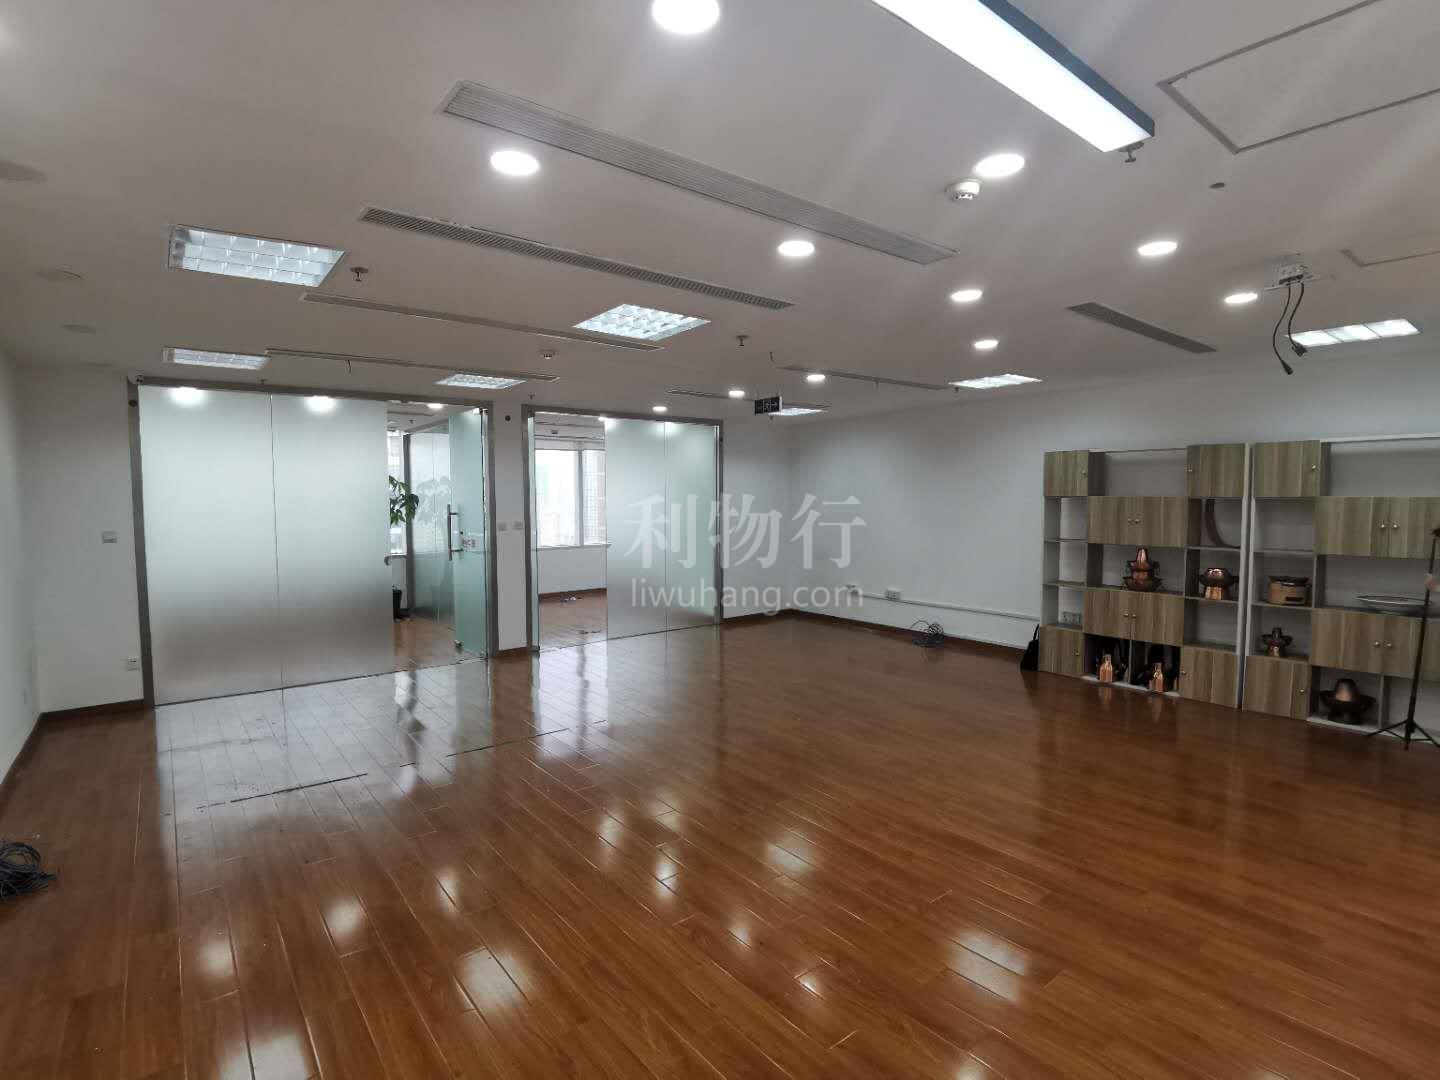 中环广场写字楼150m2办公室9.00元/m2/天 中等装修